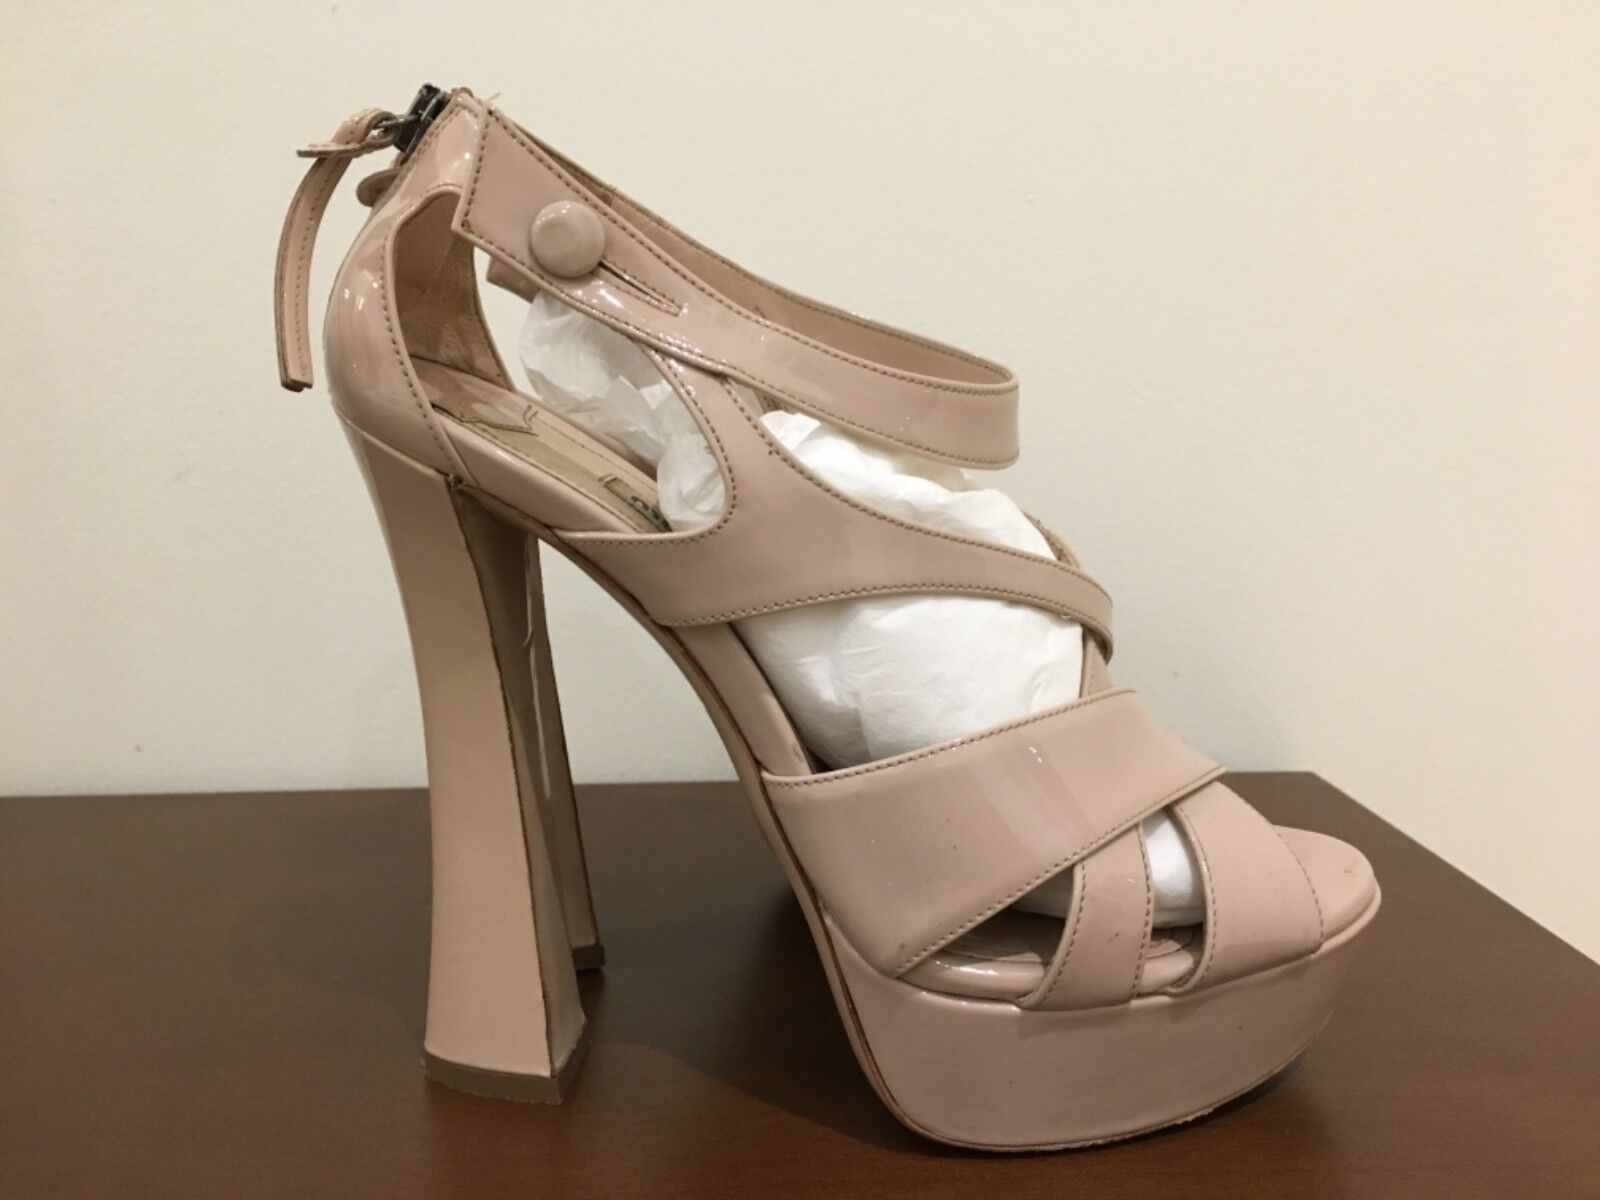 Miu Miu heels, Size 37